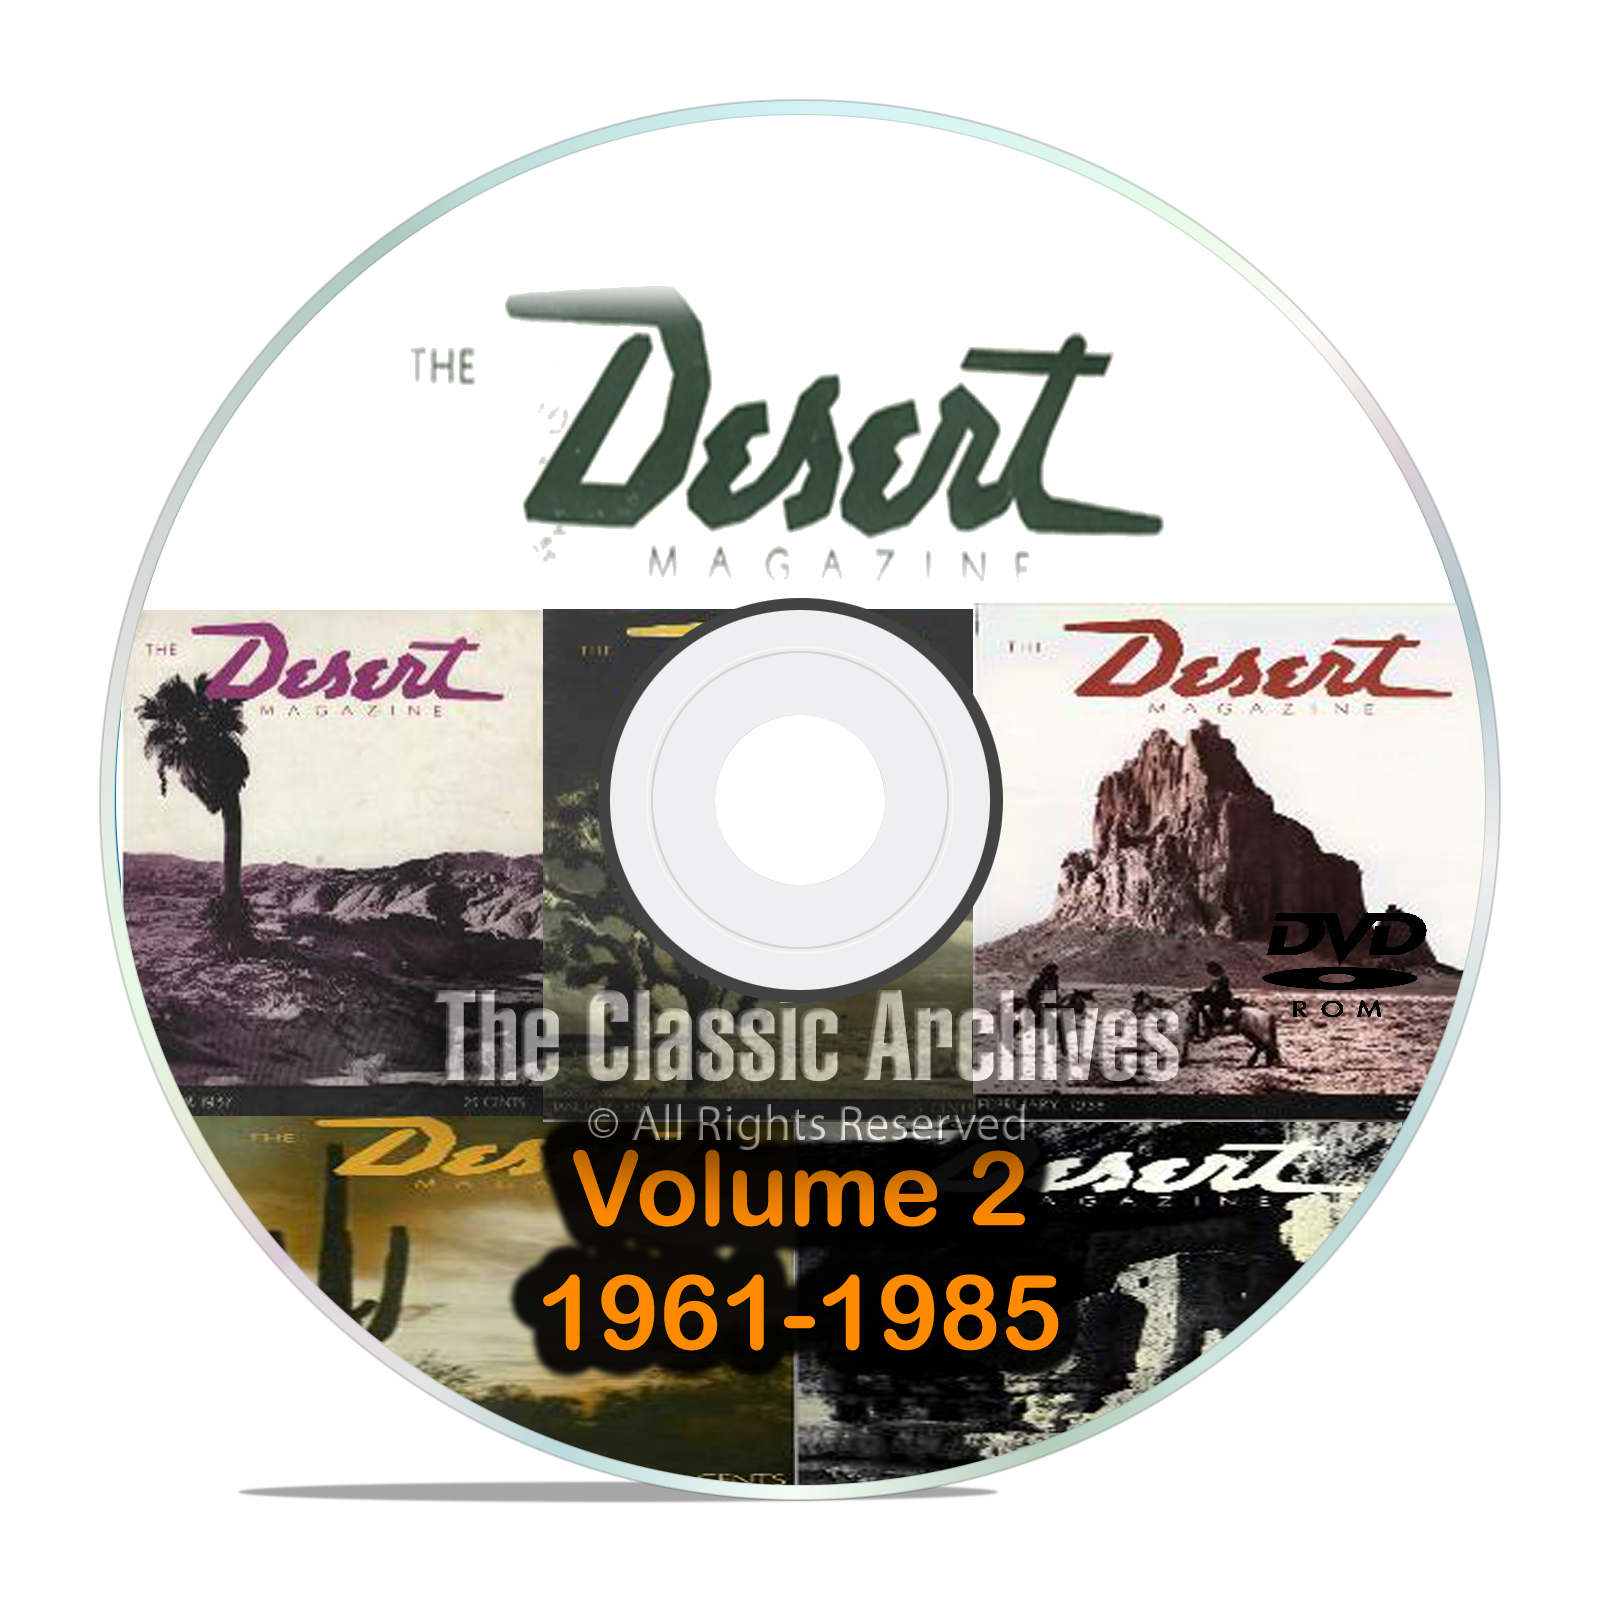 Desert Magazine, 1961-1985, Volume 2, Back Issues, Treasure Hunting DVD